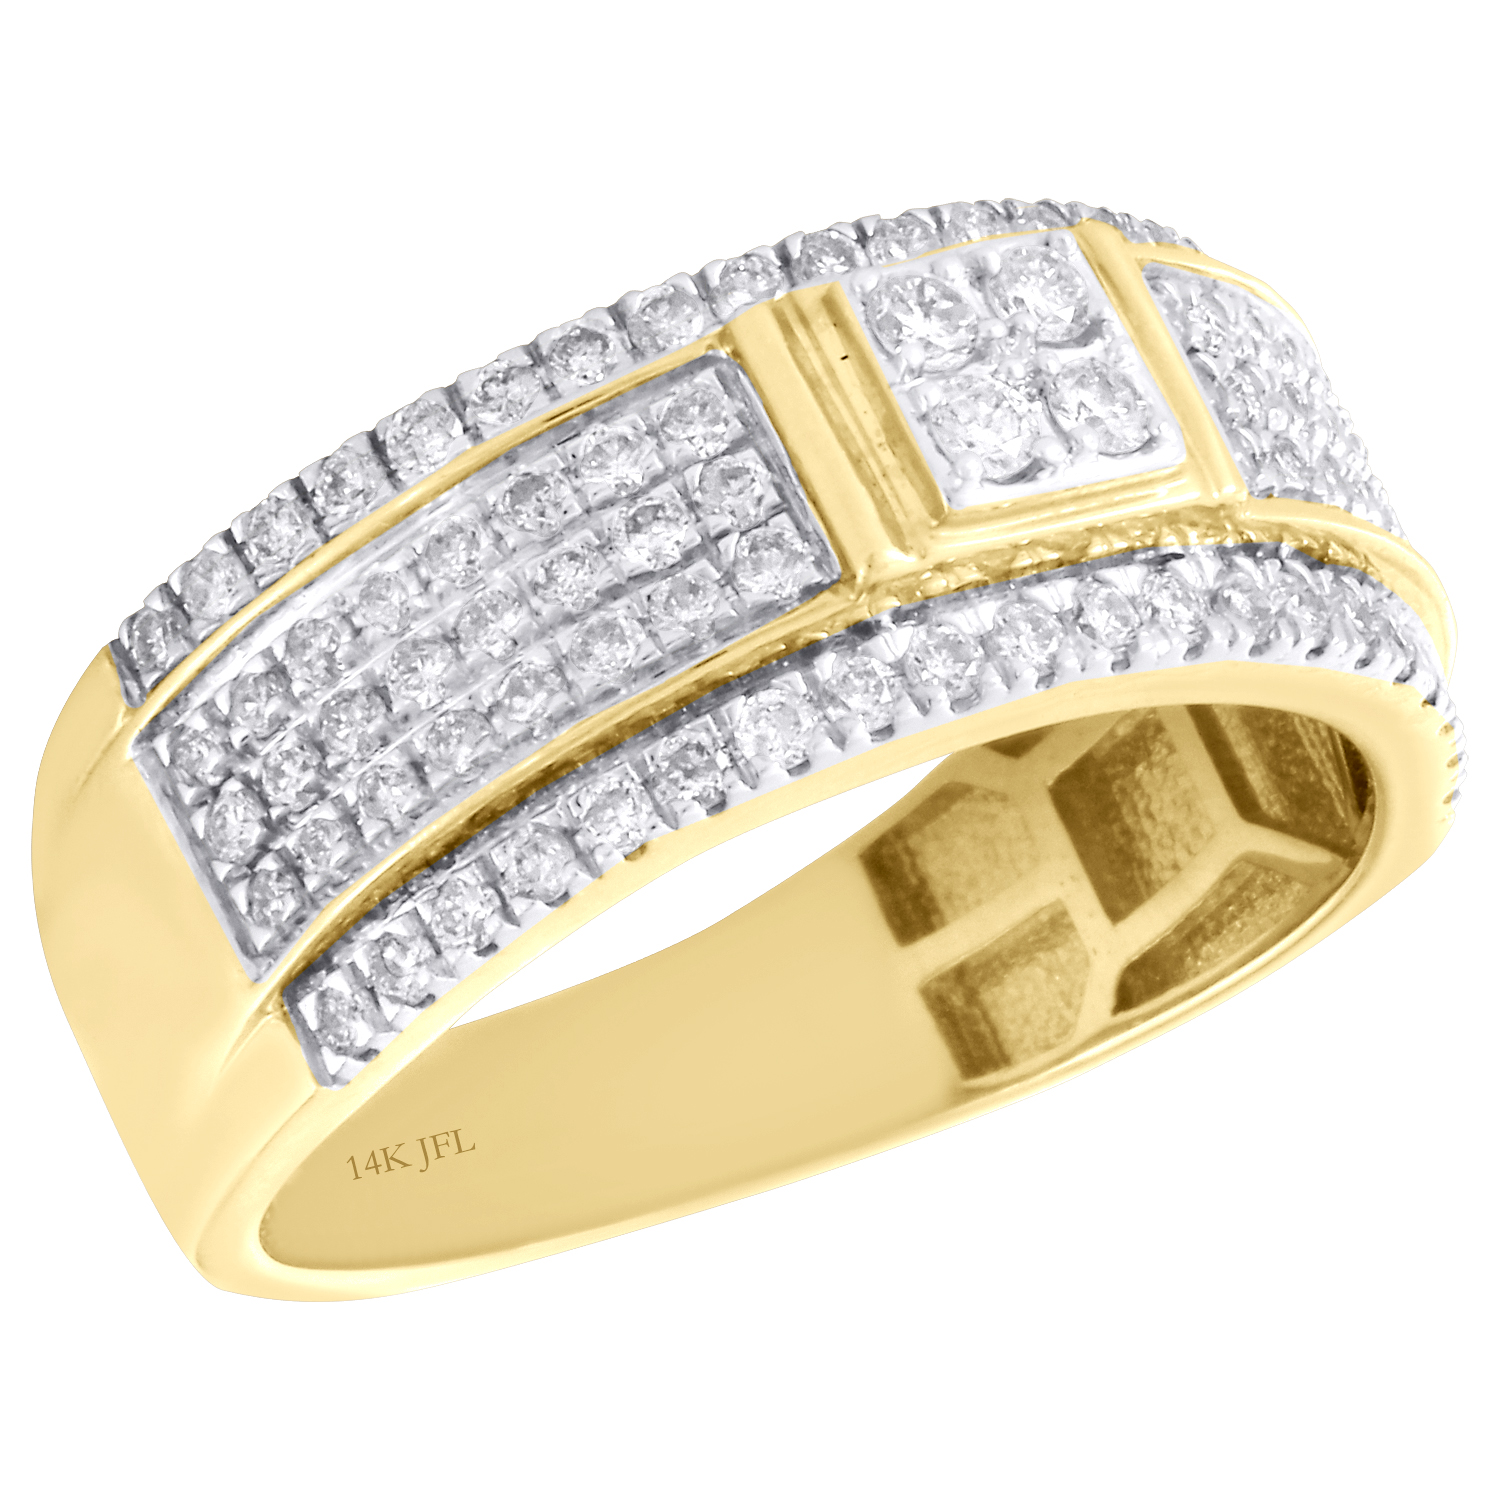 D/VVS1 585er Solide Gelbgold 3,25 Karat Prinzessin Form Solitär Verlobung Ring